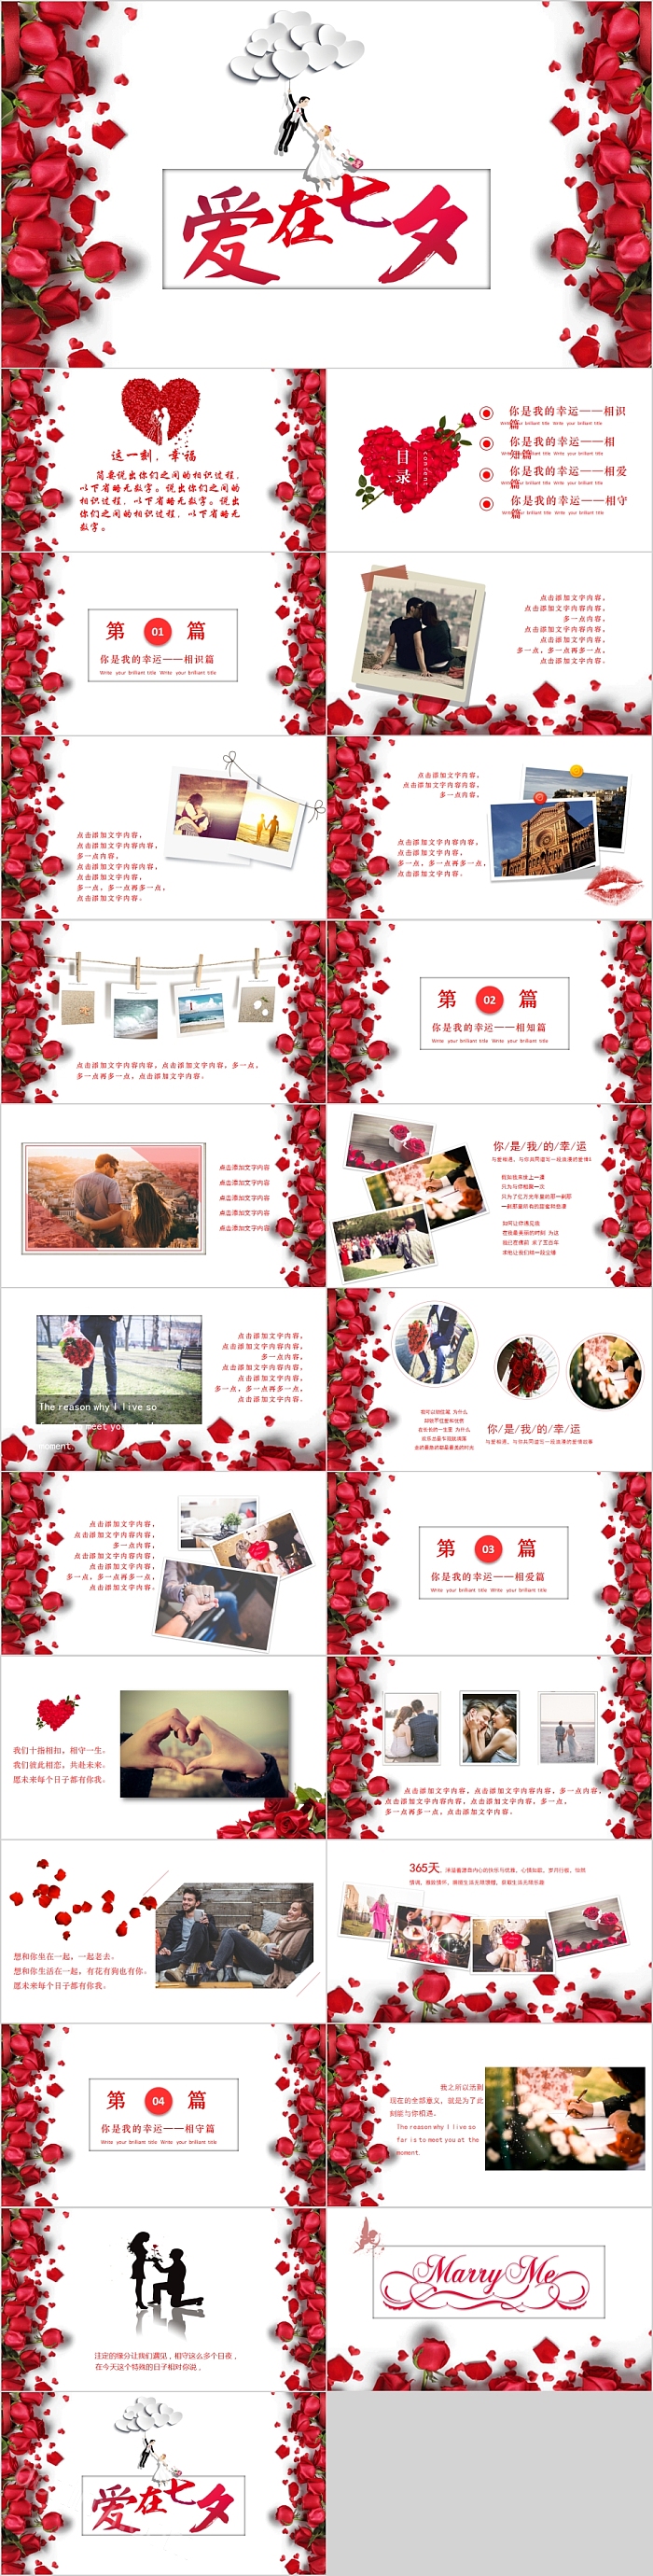 红色玫瑰花爱在七夕情人节PPT模板